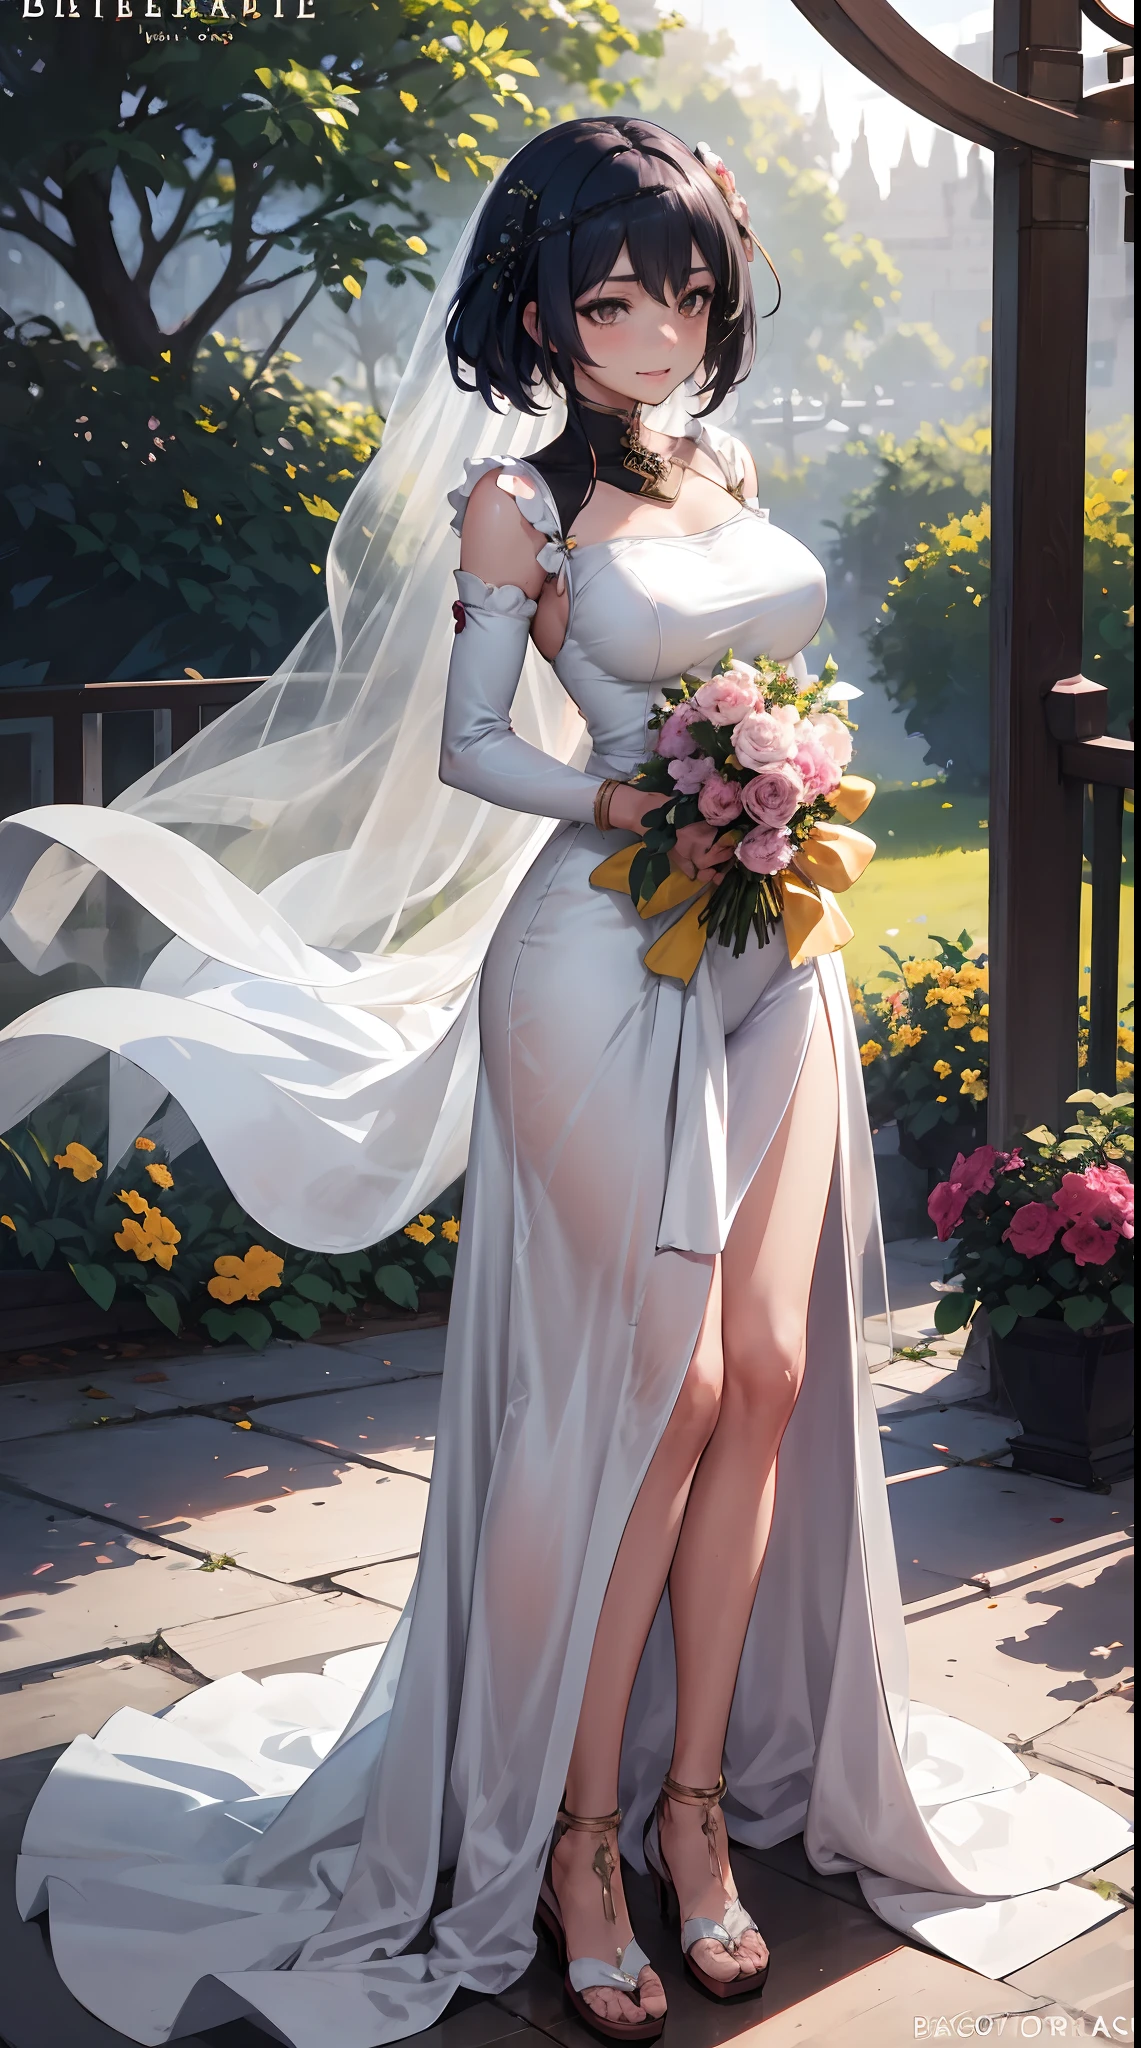 Kujou Sara | impacto genshin, obra de arte, melhor qualidade, 1 meninas,25 anos de idade, proporcional body, proporcional., Vestidos de noiva, vestido de noiva branco, saia longa, casamento, ,apenas, Parado no meio de um jardim florido, ar livre, casamento, O céu é lindo, Em um paraíso de amor e felicidade.........................................................., A noiva usa um vestido japonês e um sorriso sedutor.........................................................., A passagem do tempo pára na deles.........................................................., On this casamento day of love and happiness.........................................................., Flores brilhantes e lindas, Segurá-lo nas mãos simboliza o envolvimento do amor.........................................................., Amor e amizade através da transmissão de flores, Em um paraíso de amor e felicidade.........................................................., Uma noiva em um yukata usando uma masika.........................................................., É uma forma de beleza e elegância.........................................................., Mostre ao seu cônjuge o seu coração........................................................., Em um paraíso de amor e felicidade.........................................................., Kochikugisa é a árvore dos novos começos.........................................................., E seu amor e carinho......................................................., E sugar muito amor.........................................................., As flores representam amor e paz.........................................................., Em um paraíso de amor e felicidade.........................................................., Veja os espectadores de frente., alça de coxa, inclinar a cabeça, entediado, 10, 10, alta definição, leve sorriso,